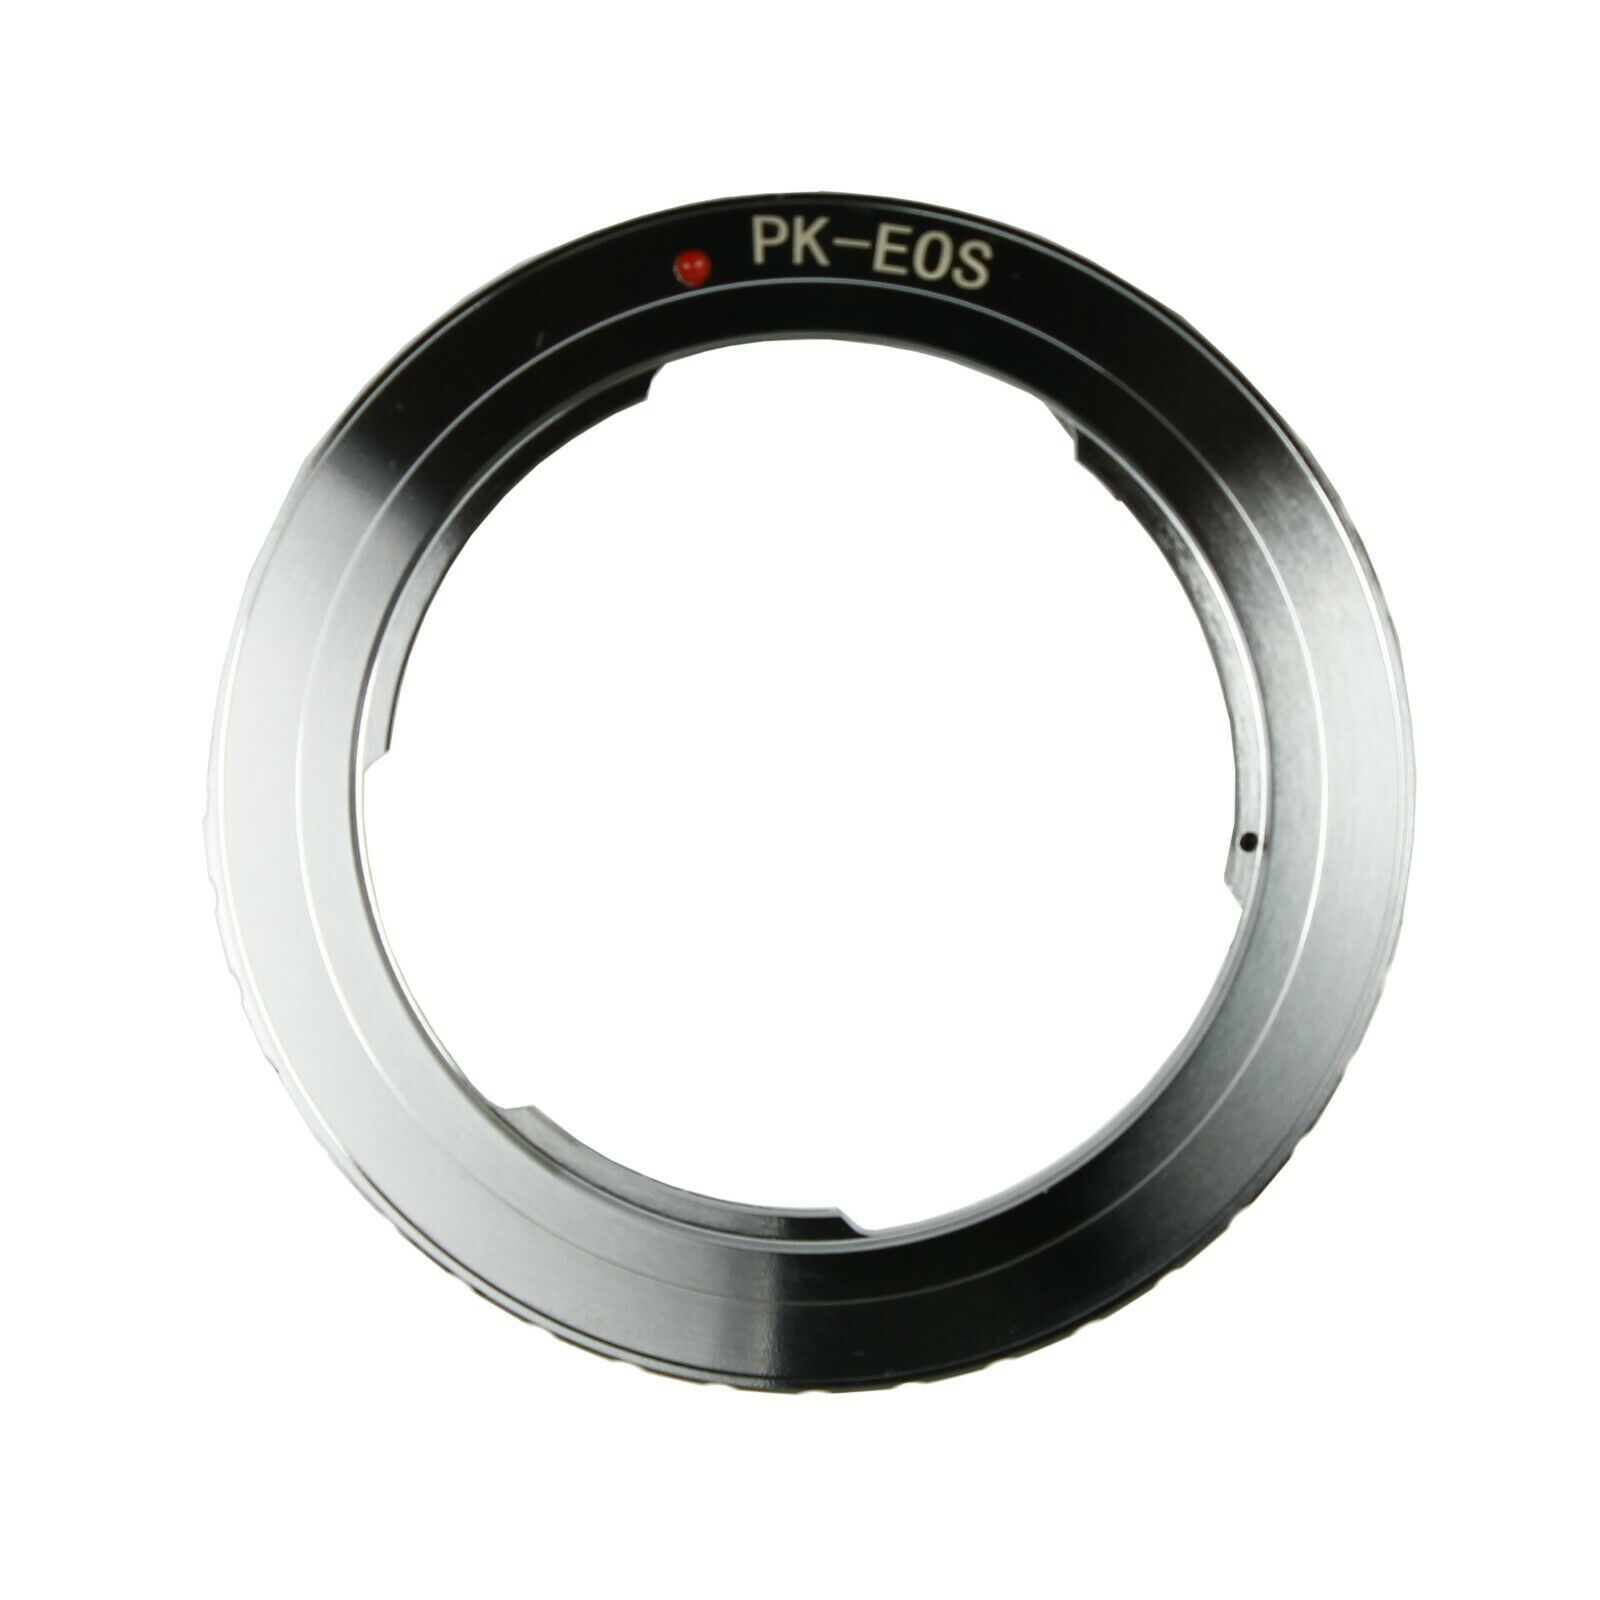 Pentax Pk K Lens To Canon Eos Ef Mount Adapter Ring 50d 600d 1000d 1100d 550d 7d